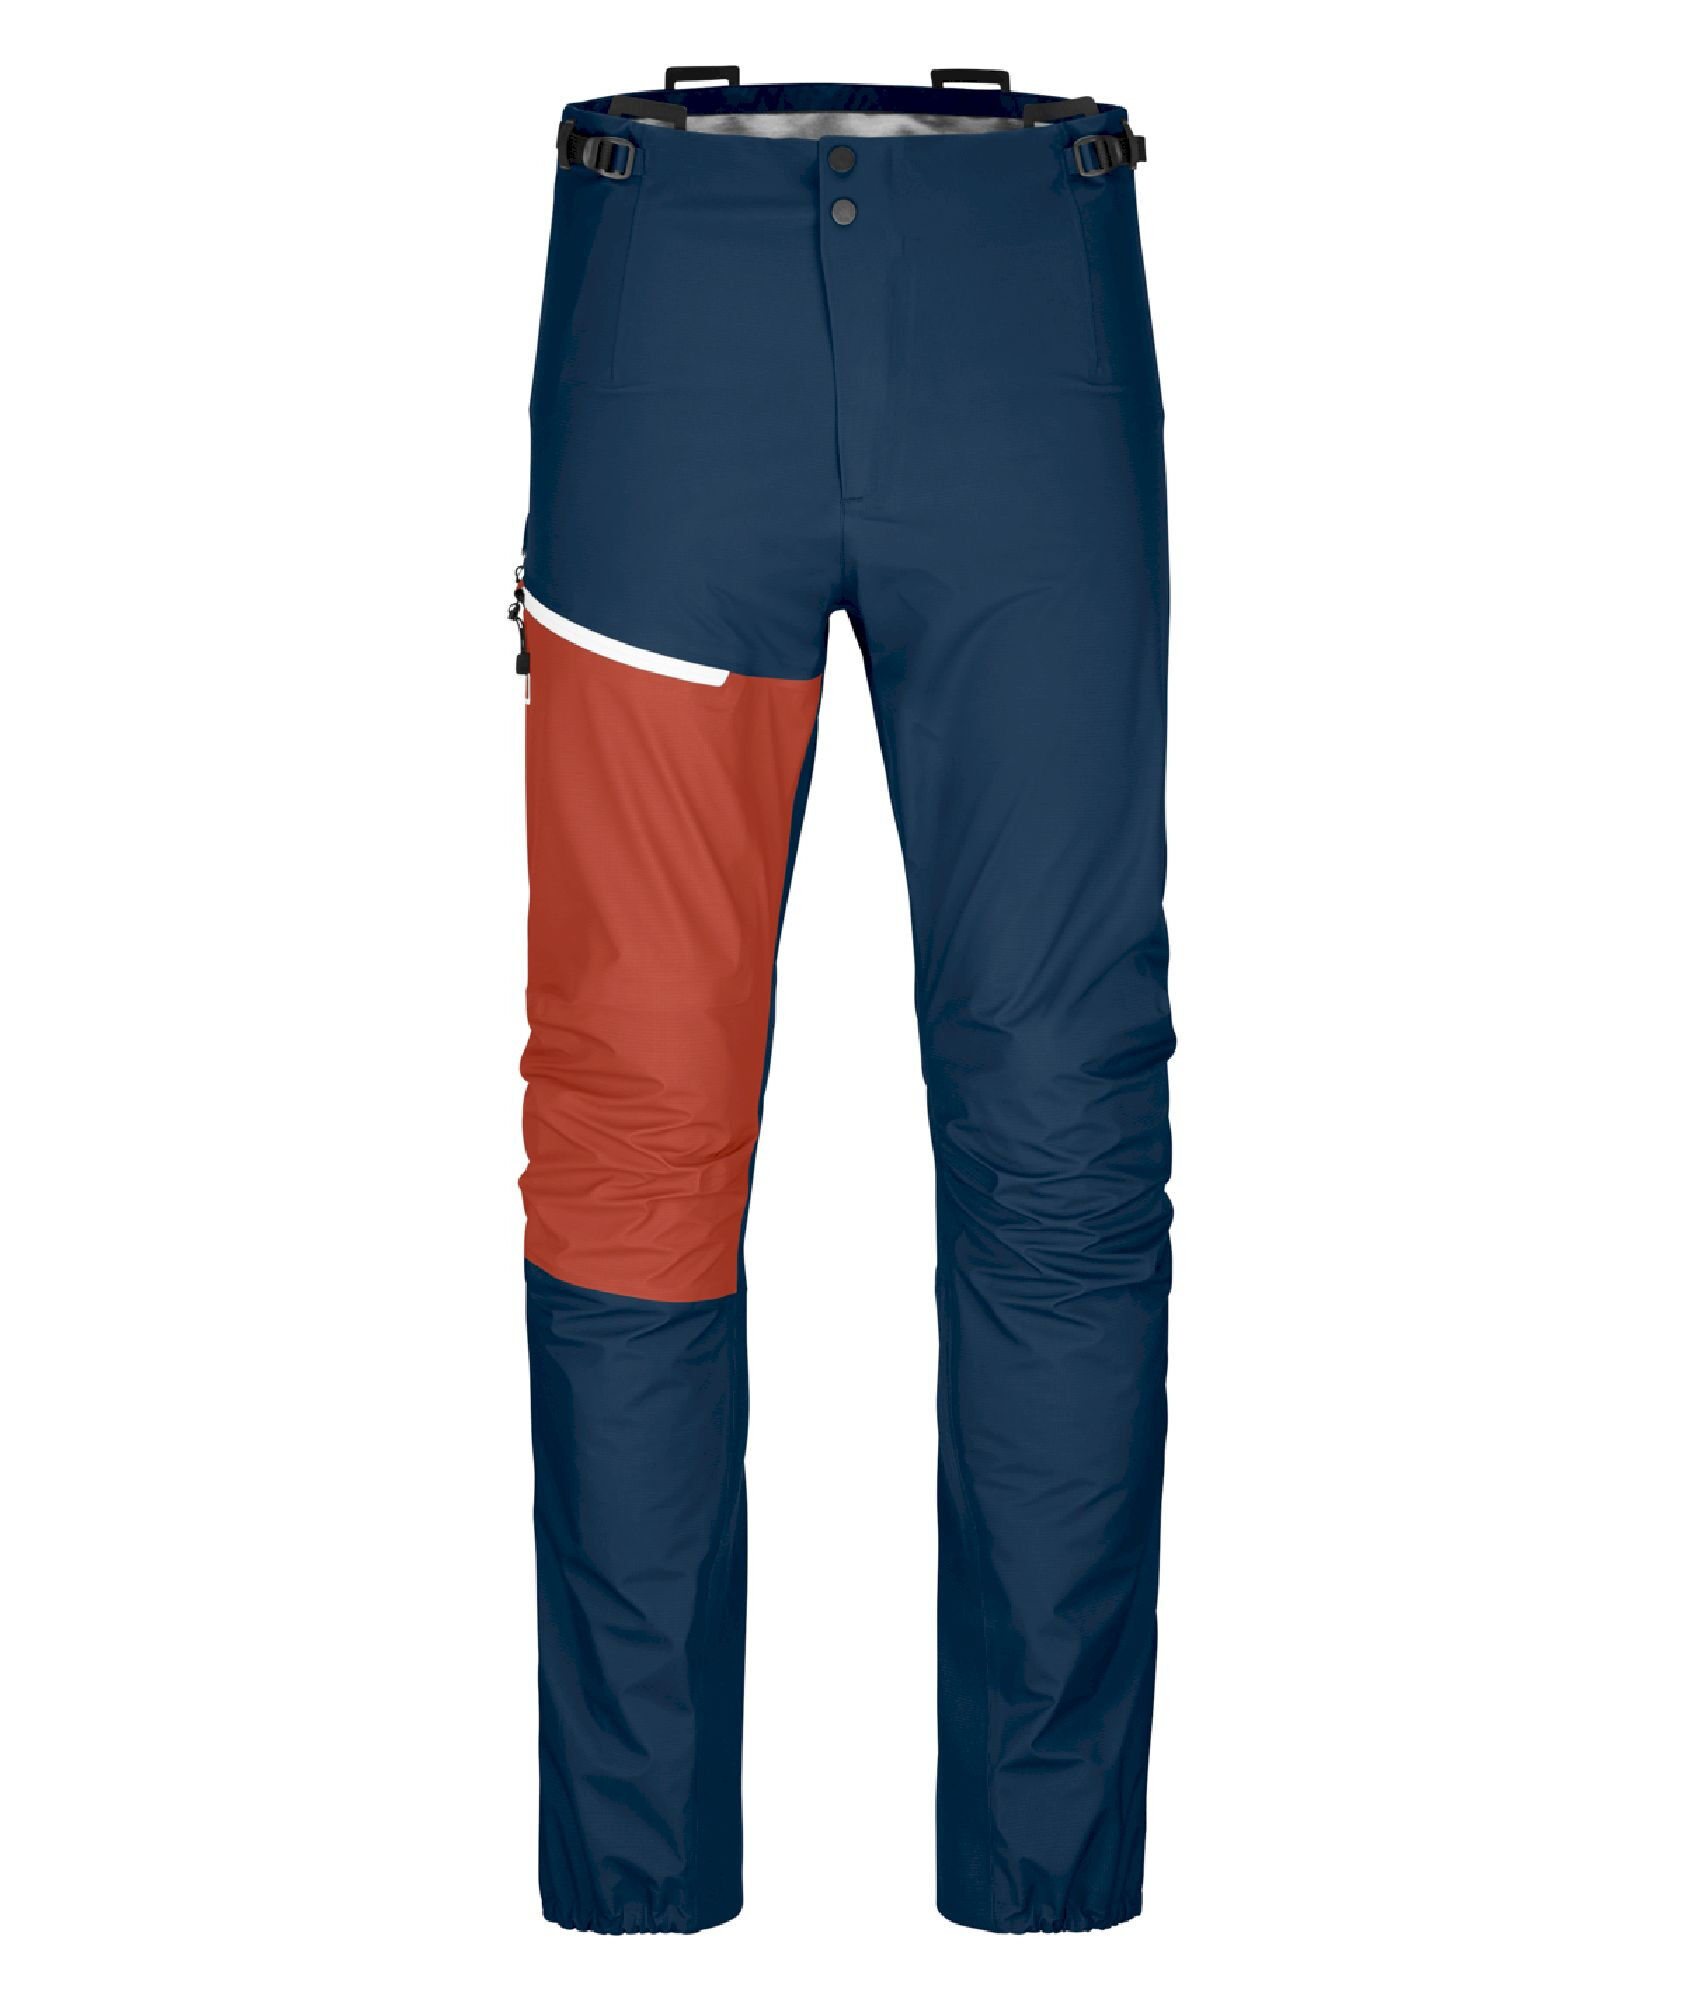 Ortovox Westalpen 3L Light Pants - Hardshell pants - Men's